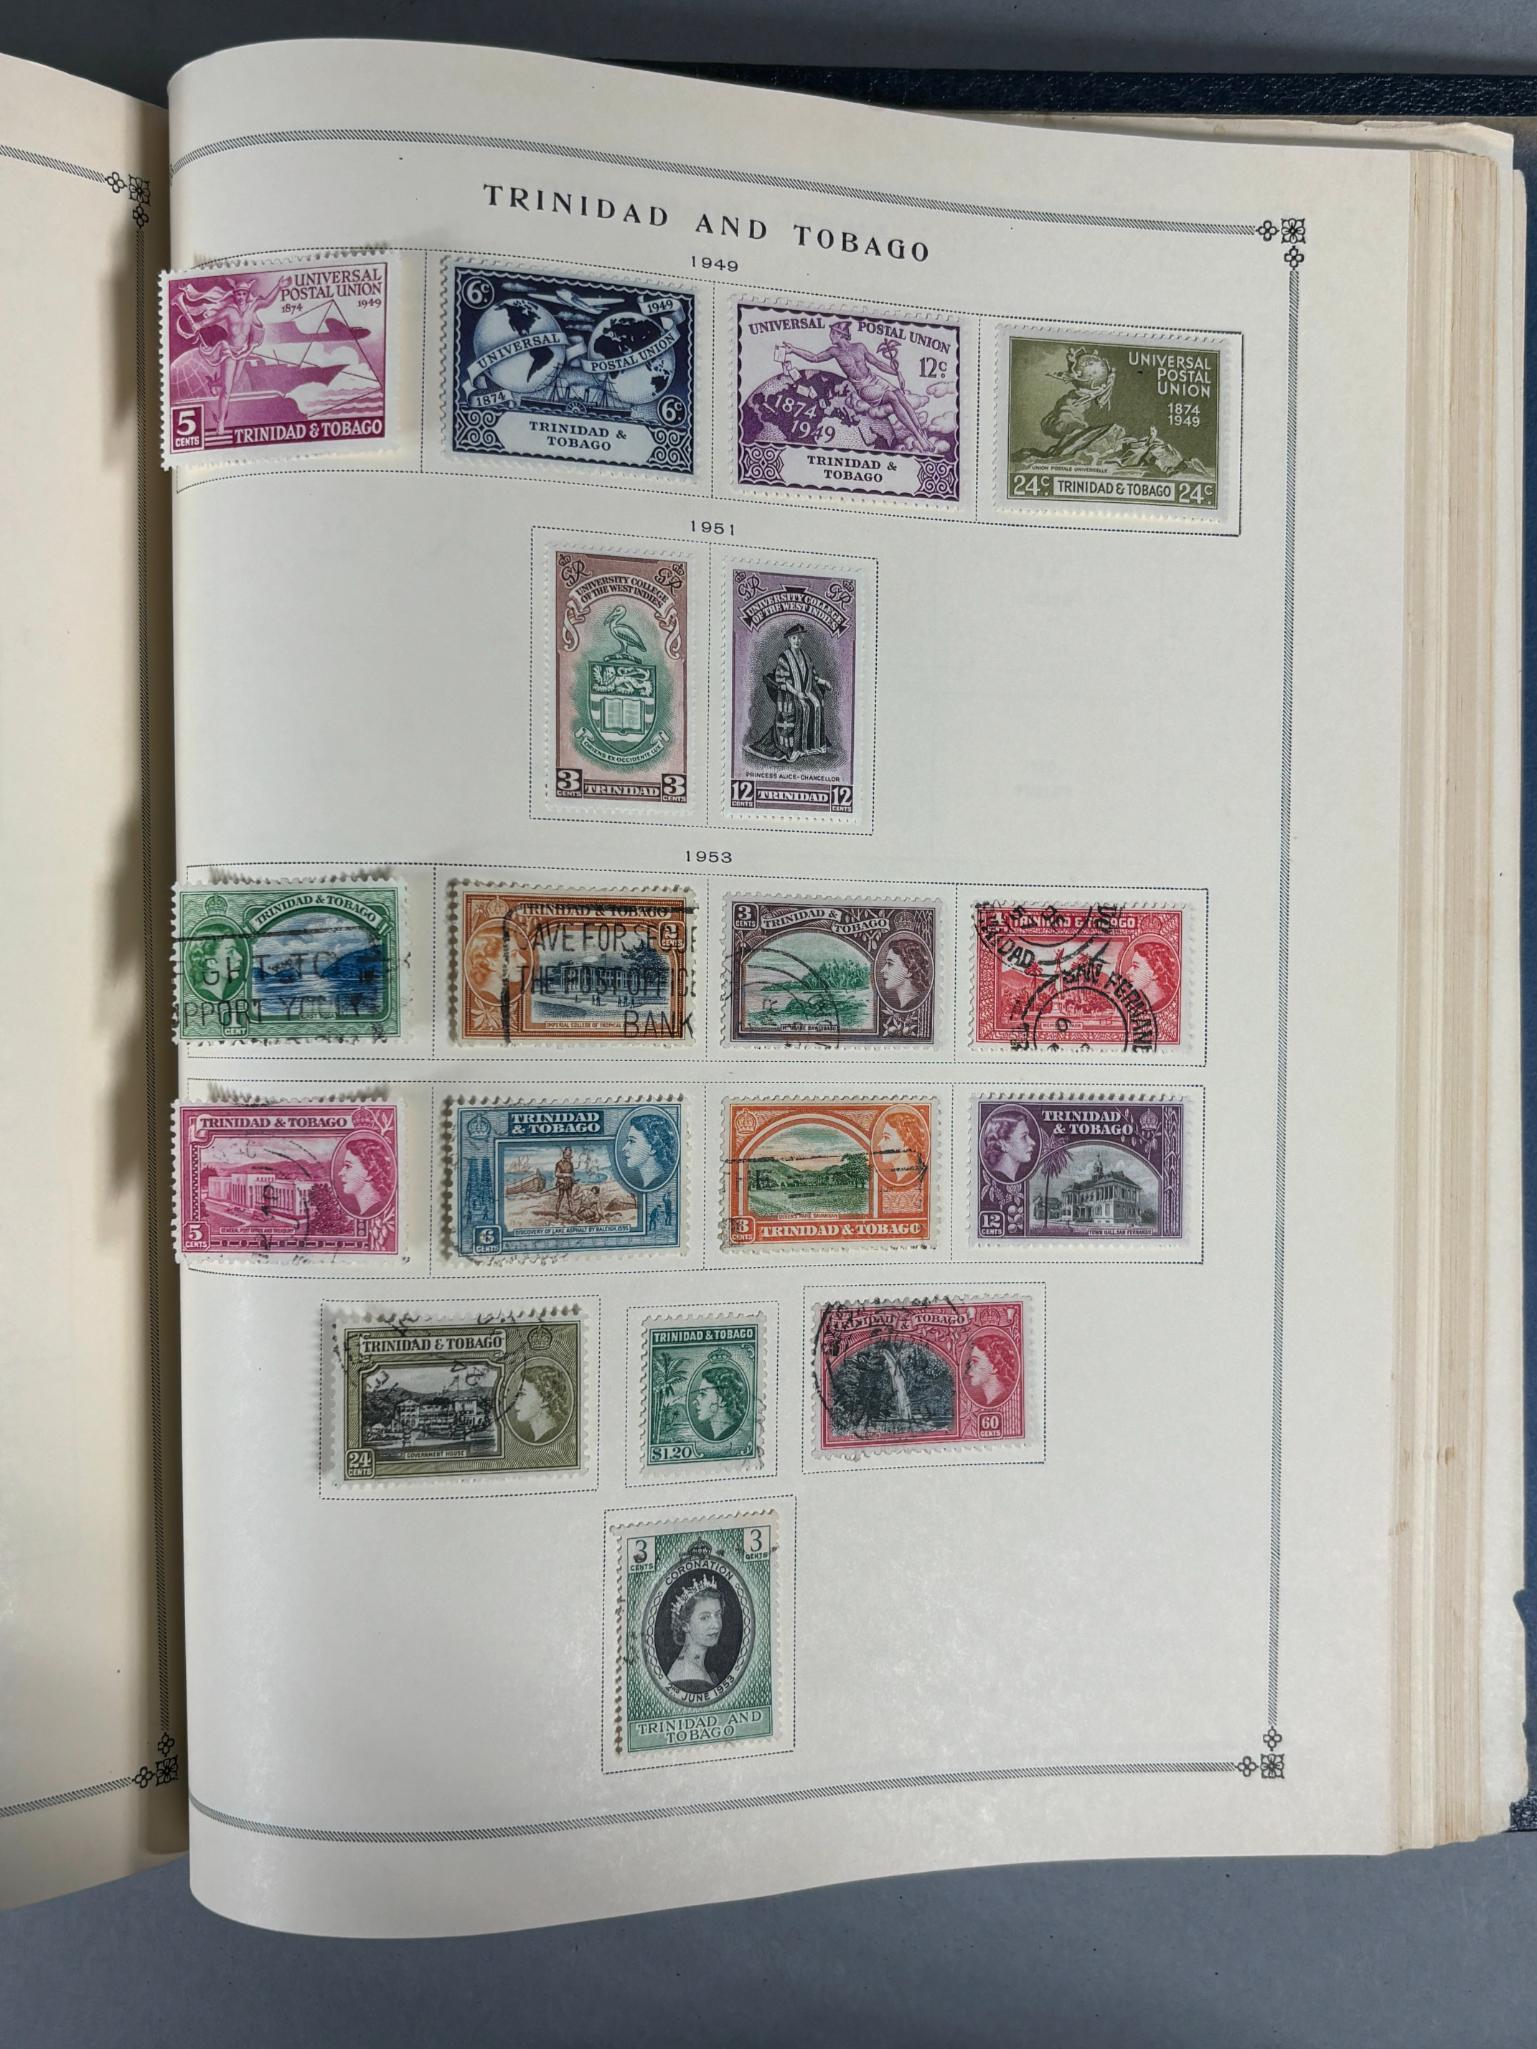 Group Lot of 5 International Stamp Albums Vol 1-V